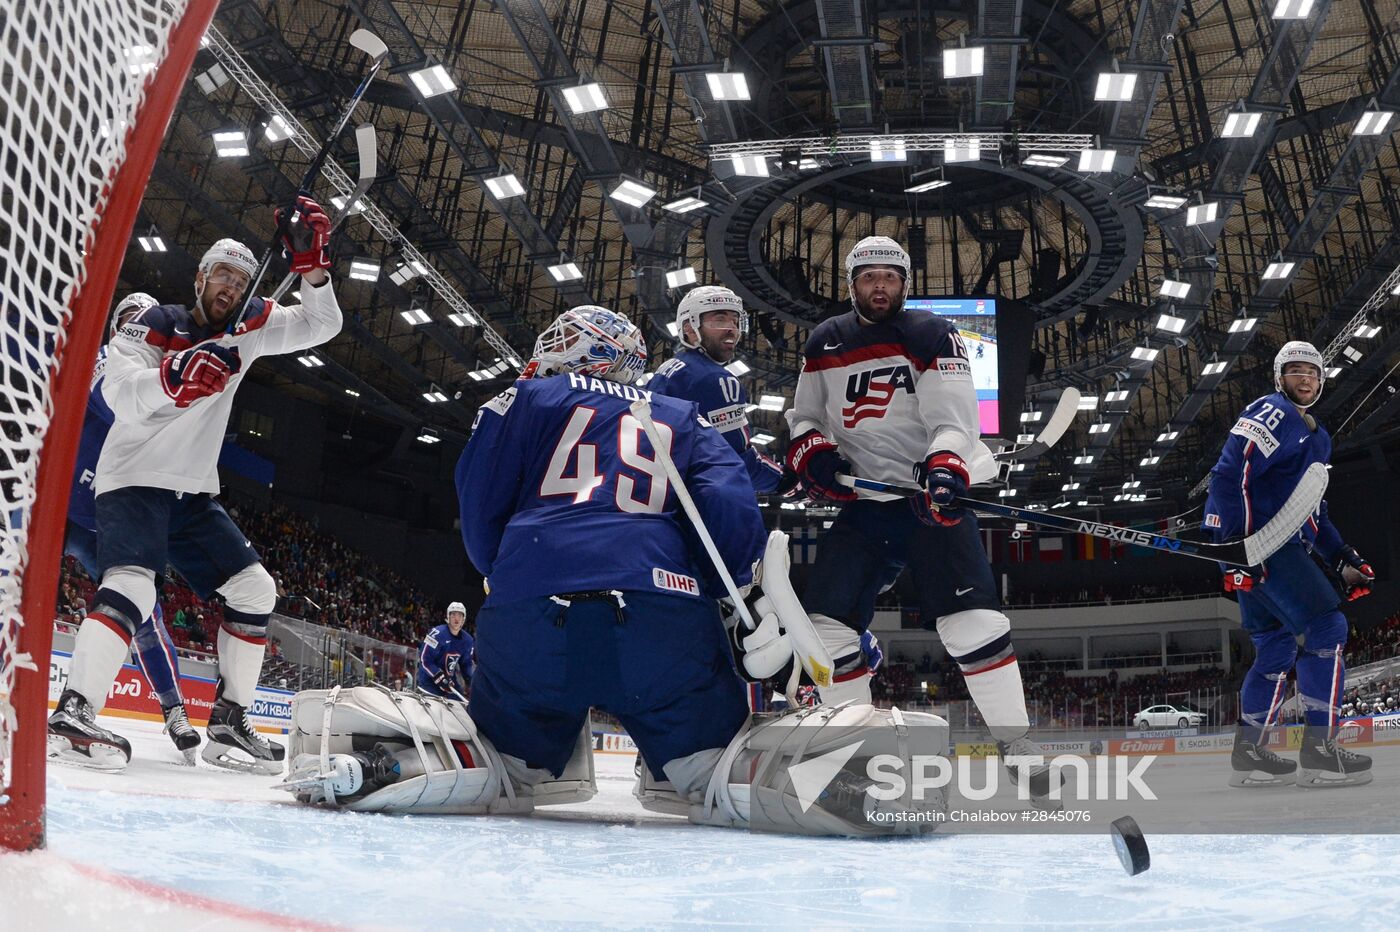 2016 IIHF World Championship. USA vs. France